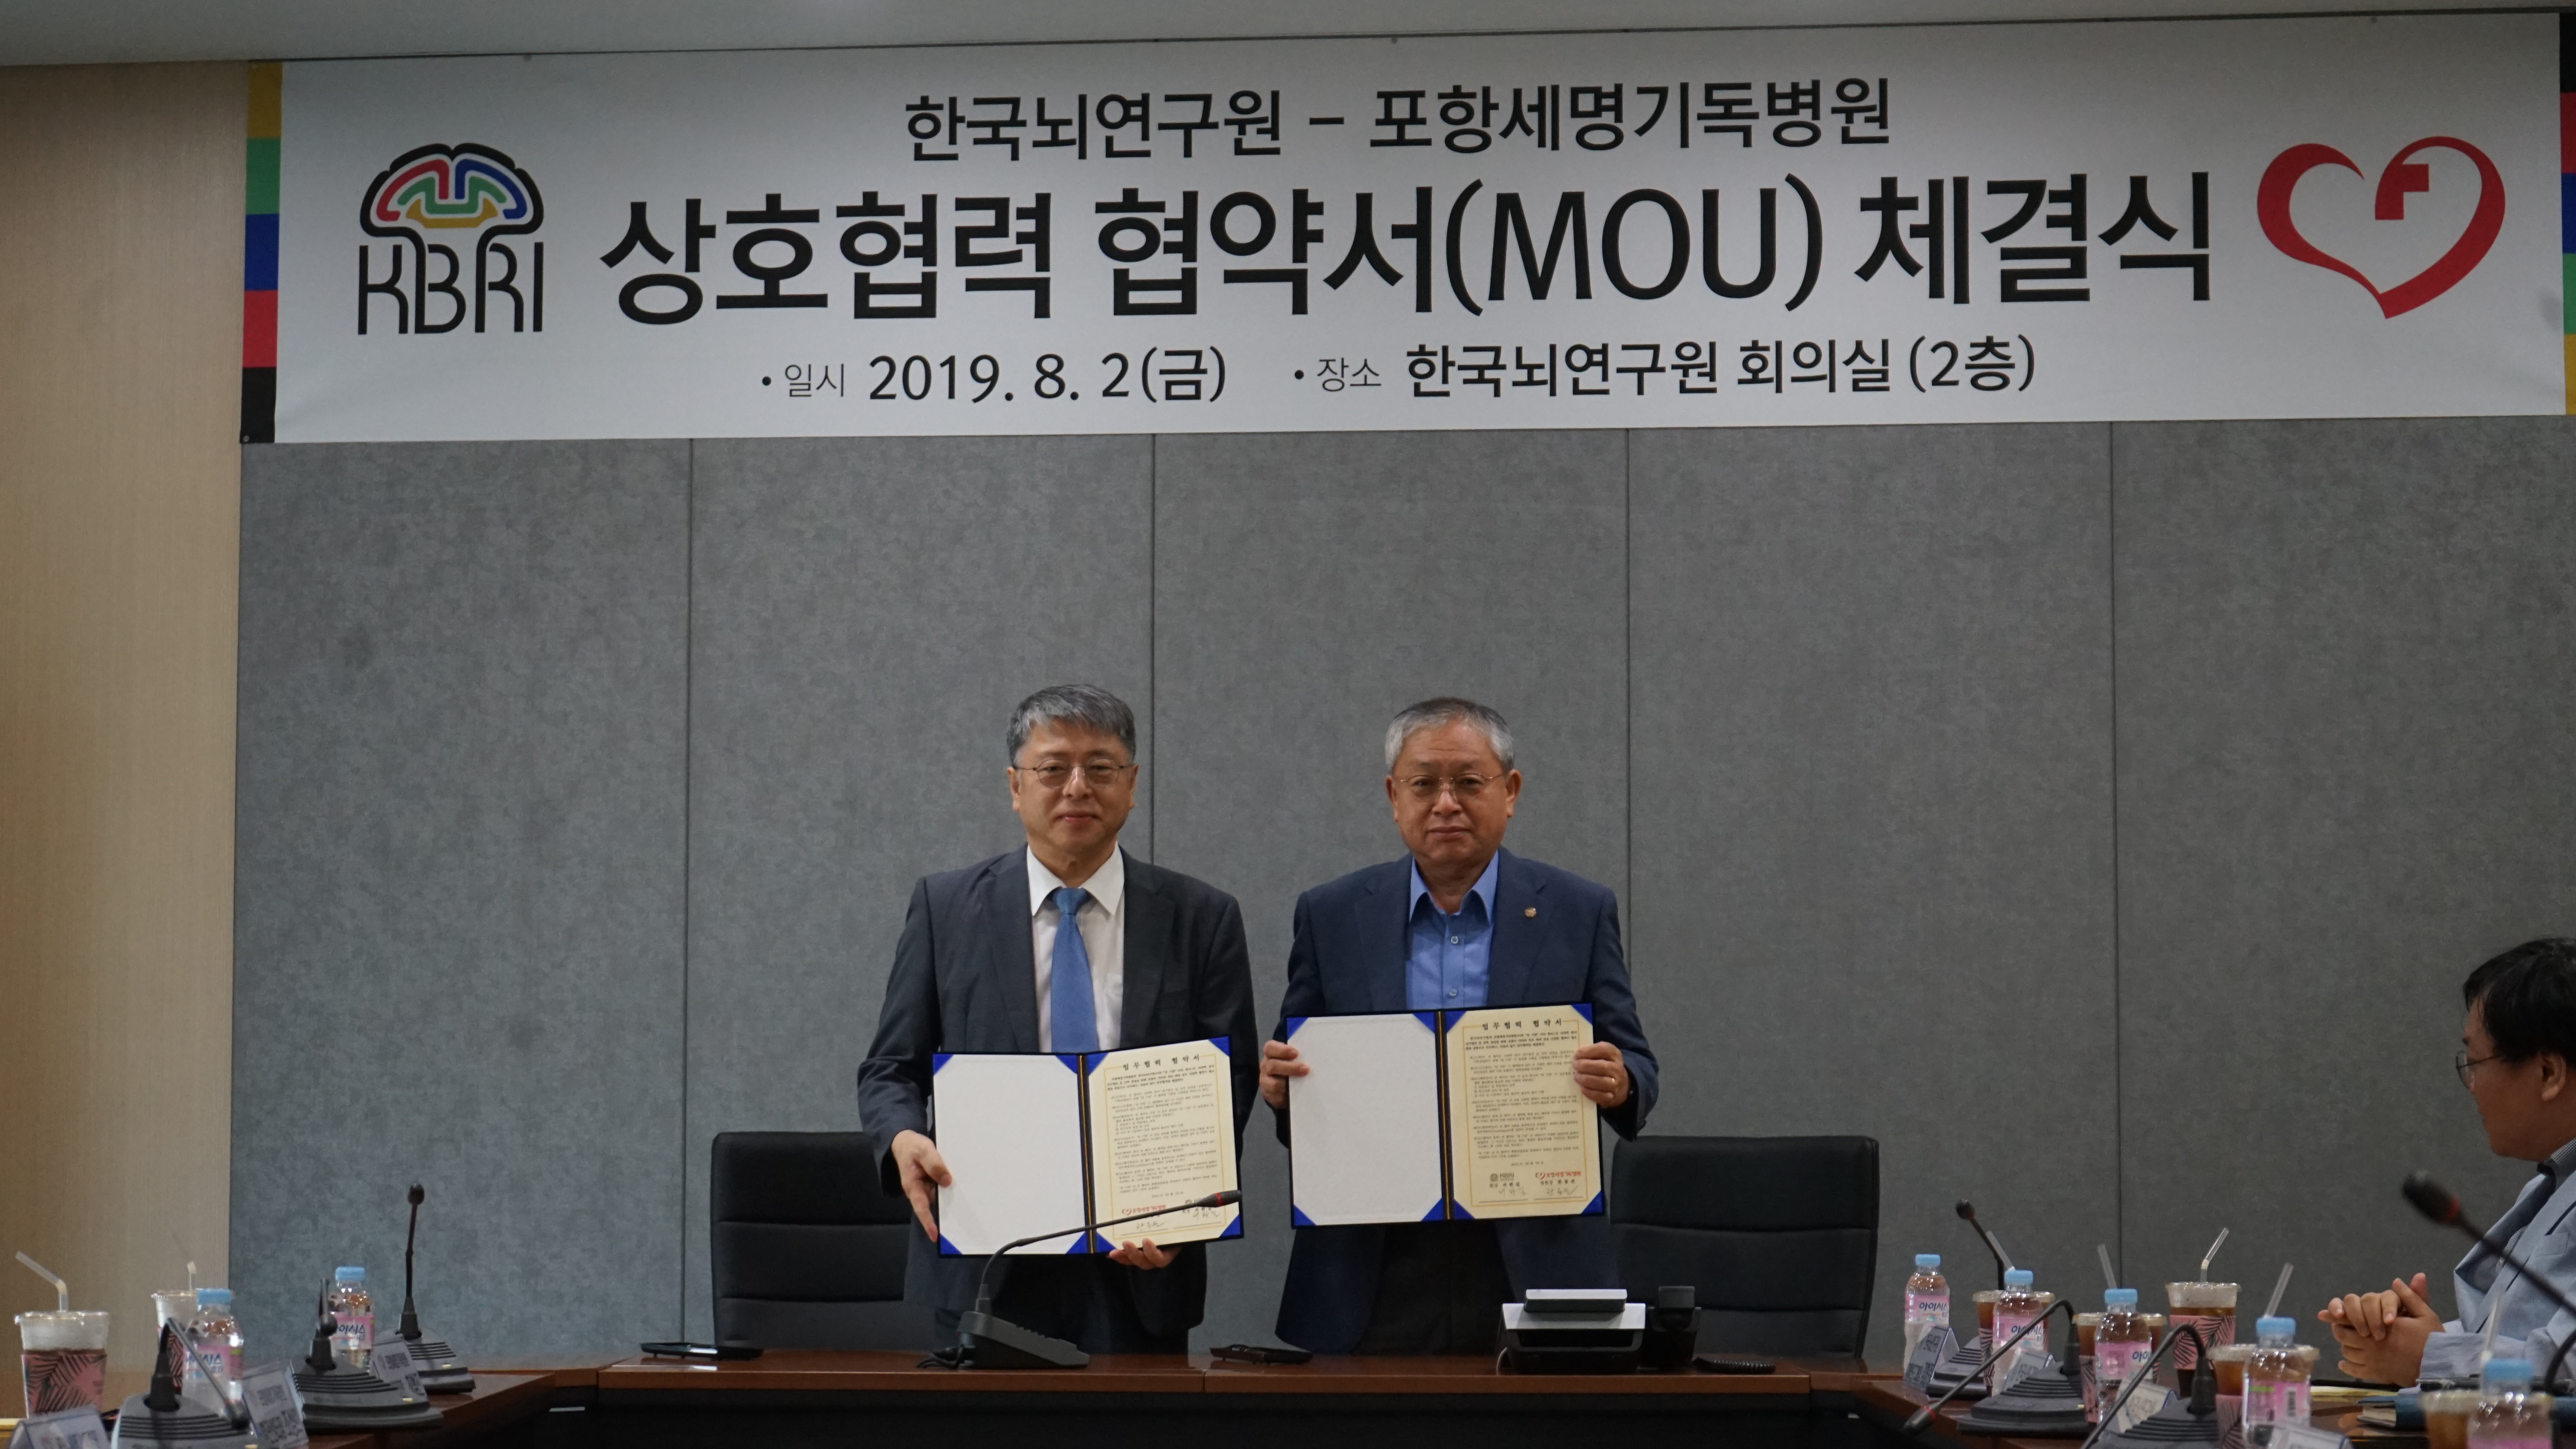 한국뇌연구원-포항세명기독병원 상호협력 협약서(MOU) 체결